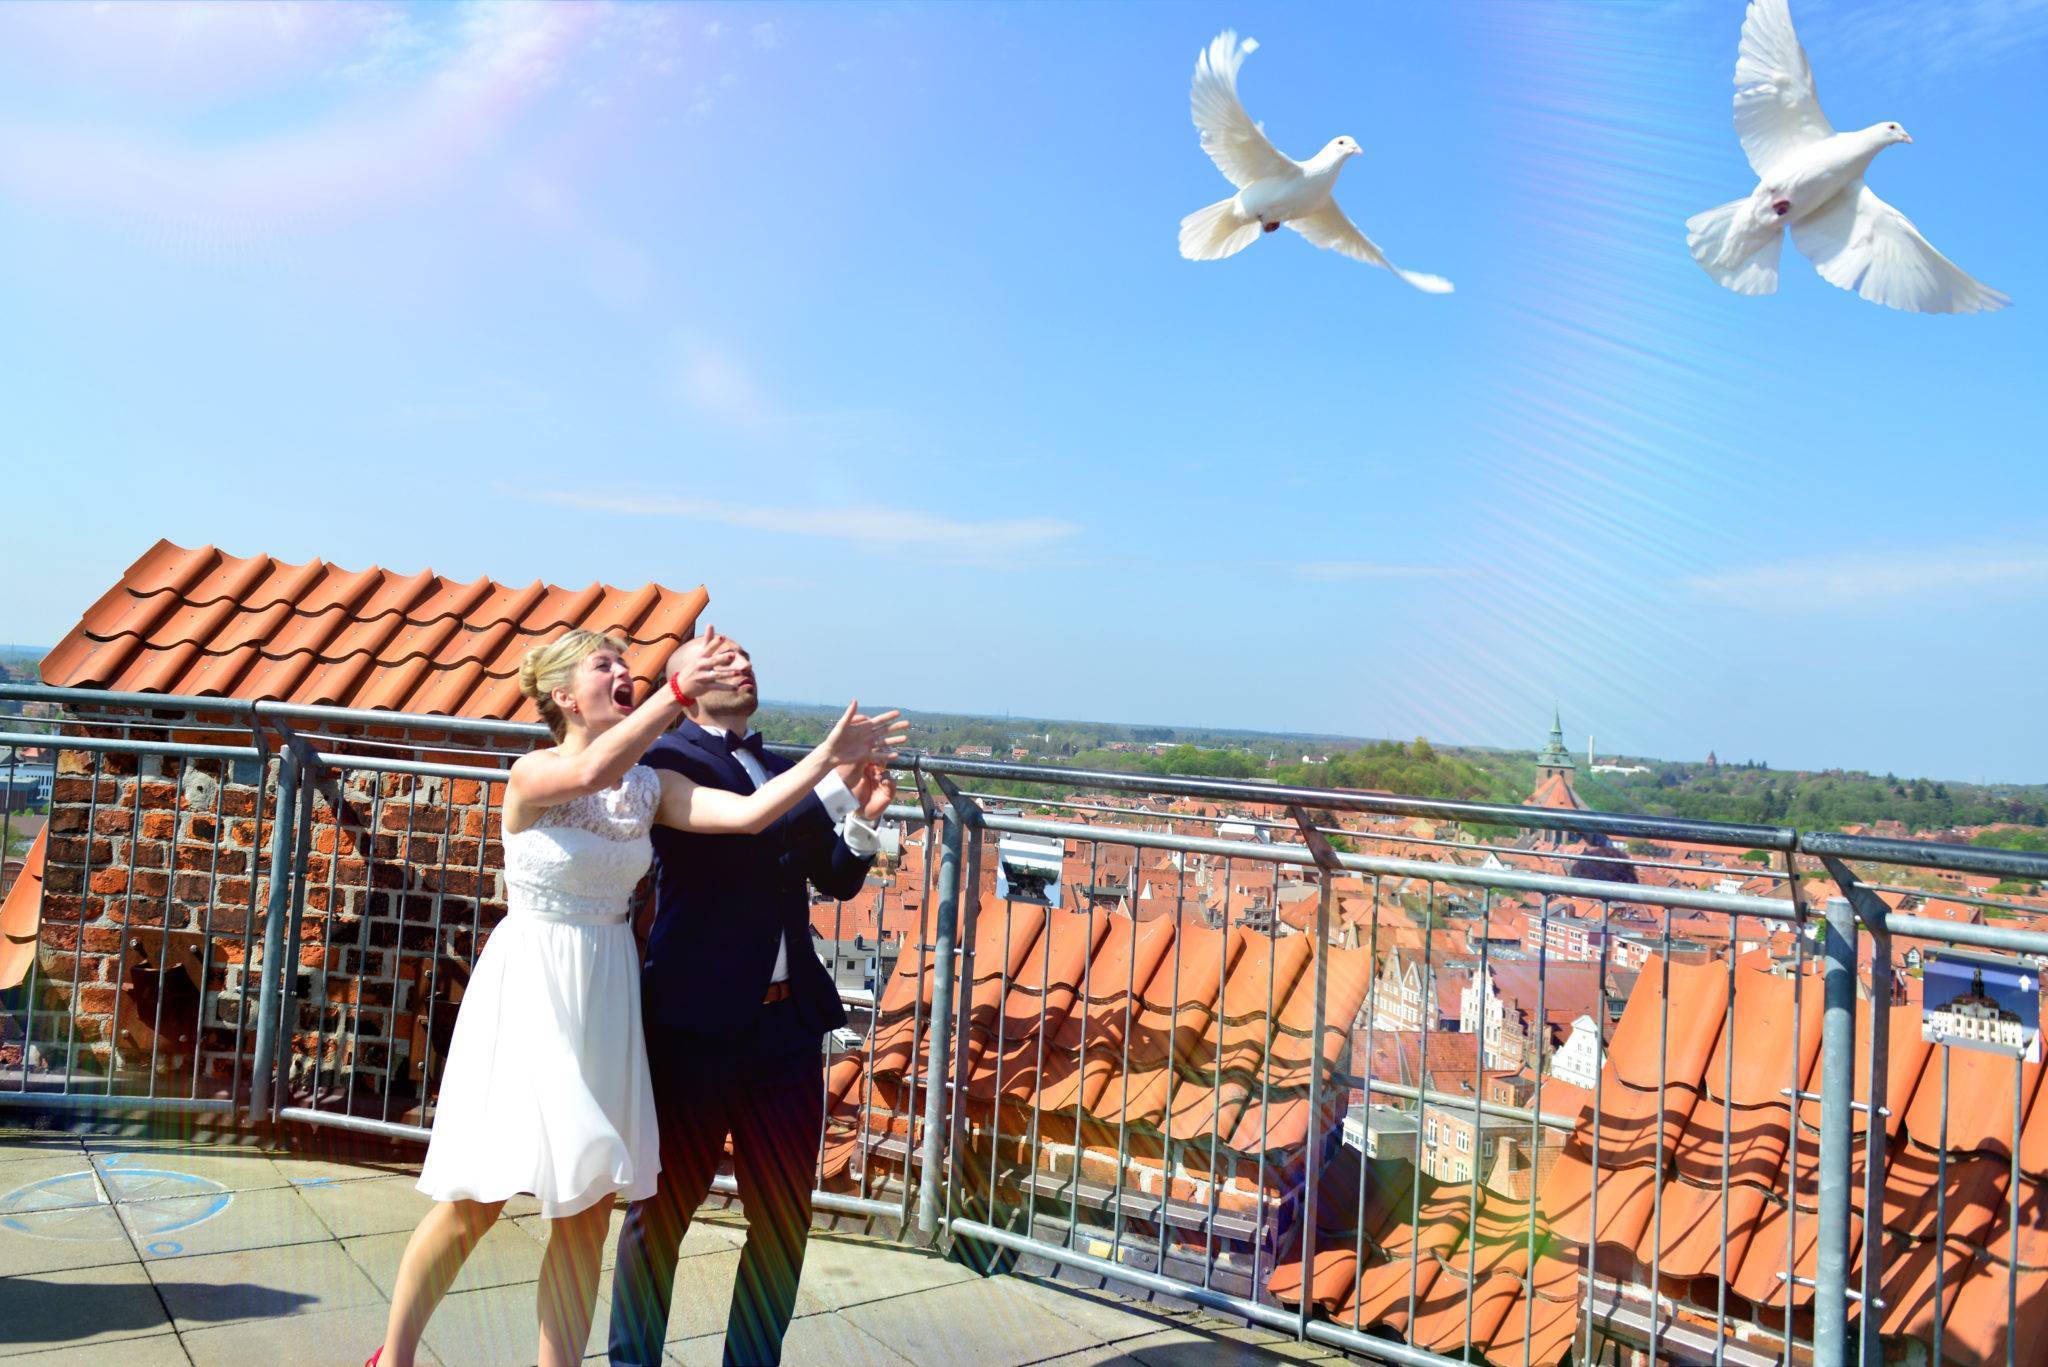 Hochzeitsfotografie auf dem Wasserturm mit Brautpaar und weißen Tauben - über den Dächern Lüneburgs